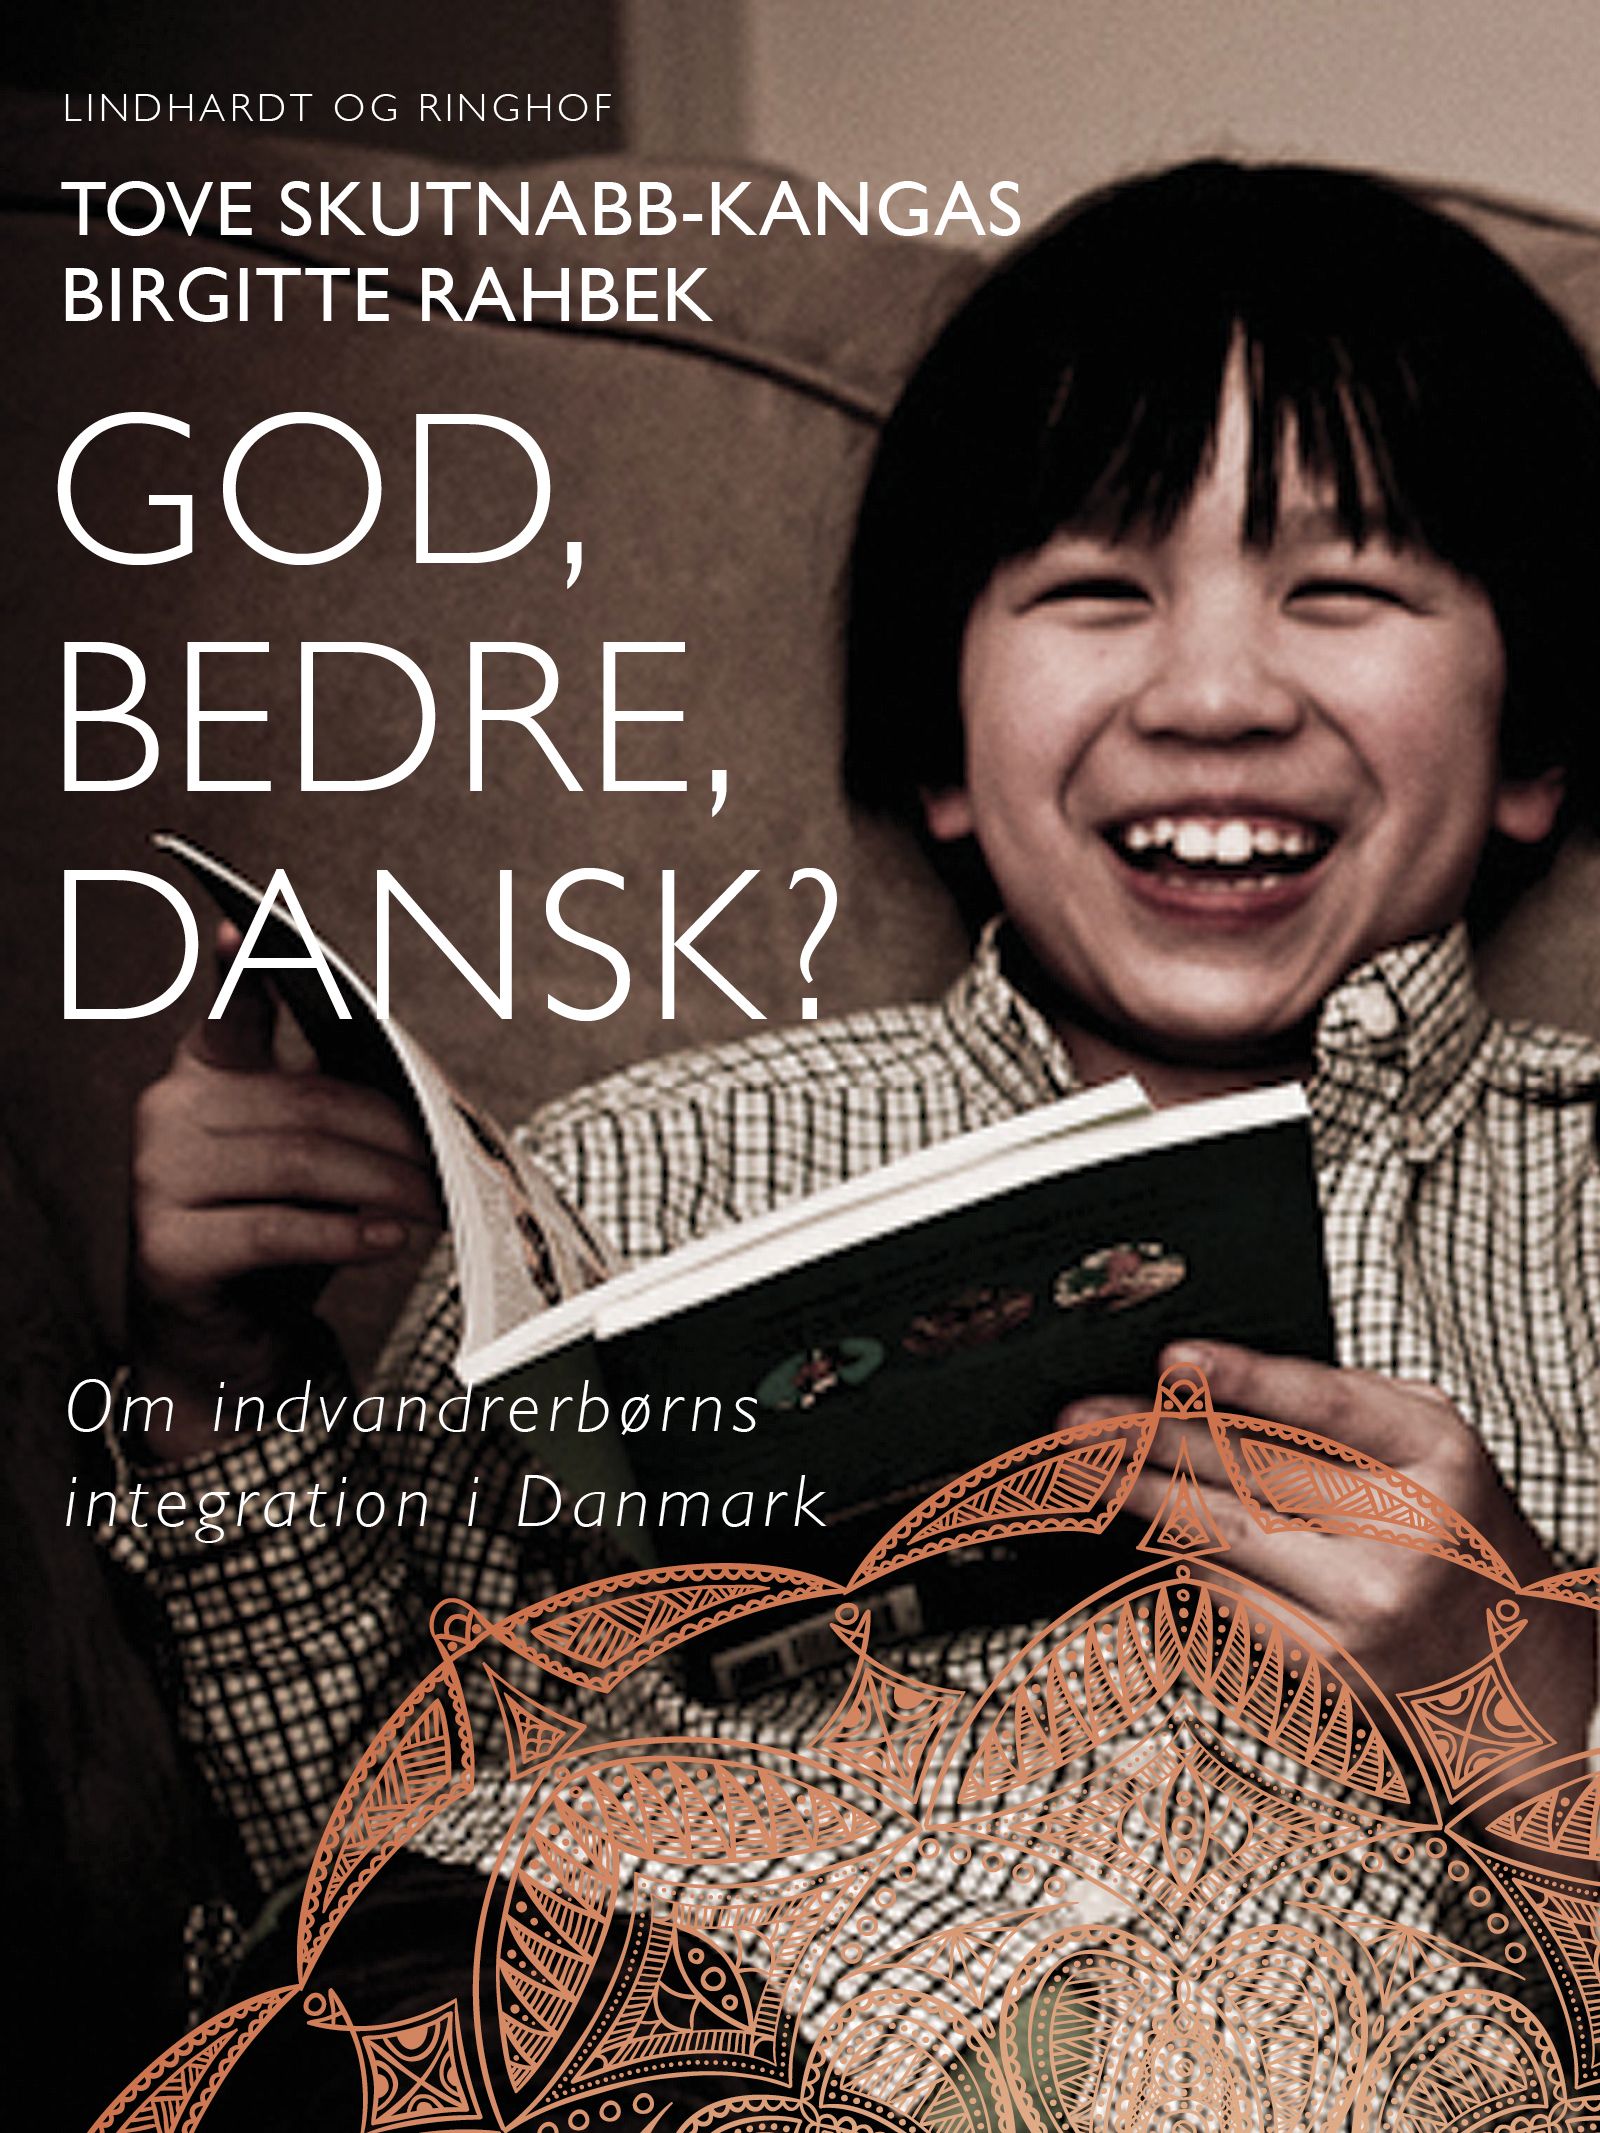 God, bedre, dansk? Om indvandrerbørns integration i Danmark, e-bog af Birgitte Rahbek, Tove Skutnabb-Kangas